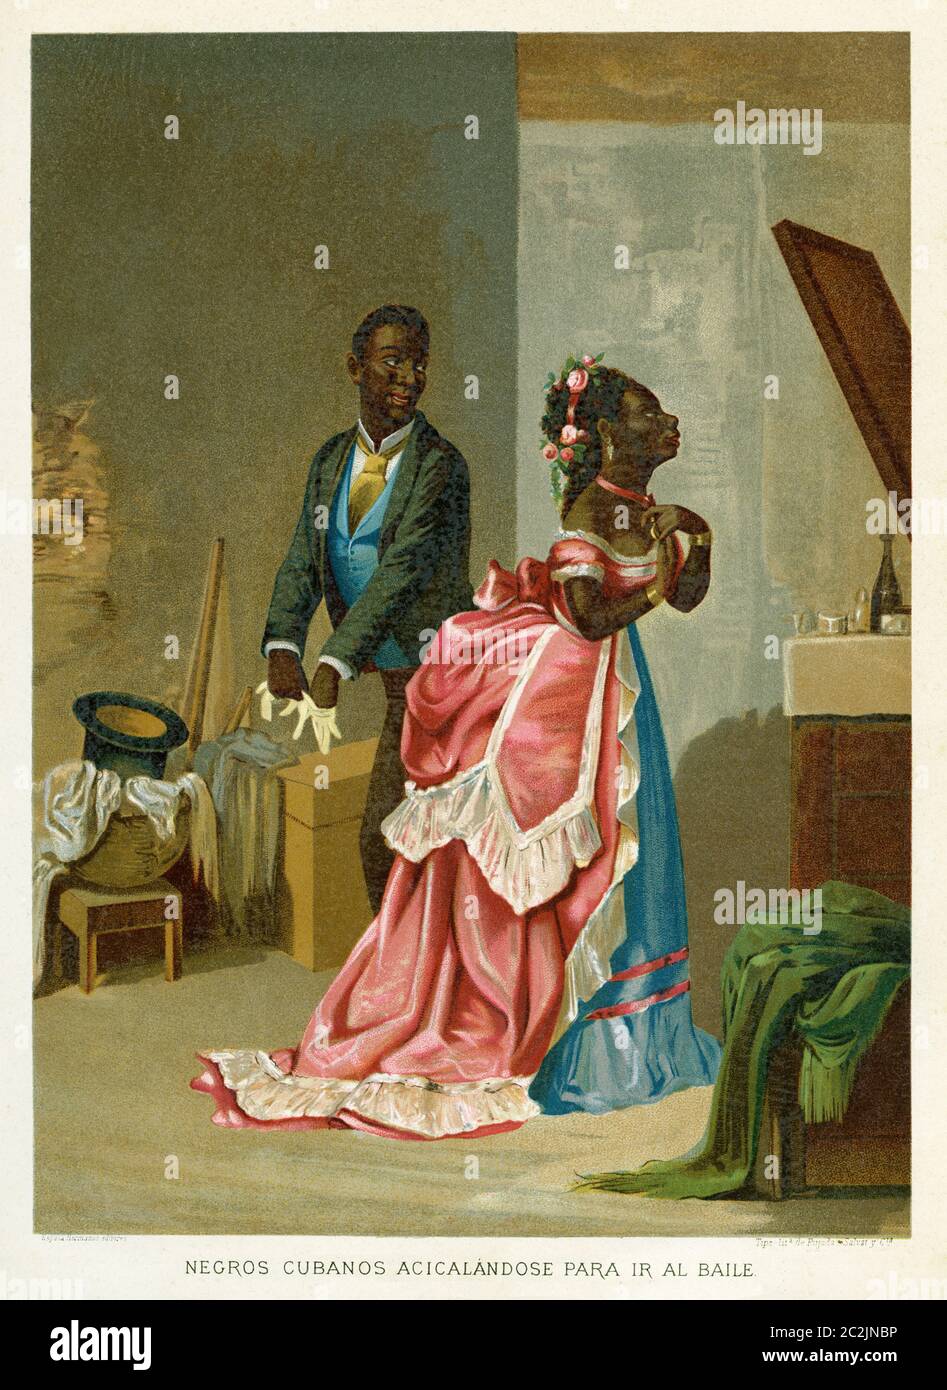 Les Cubains noirs s'habiller pour aller à la danse. Illustration gravée du XIXe siècle, El Mundo Ilustrado 1880 Banque D'Images